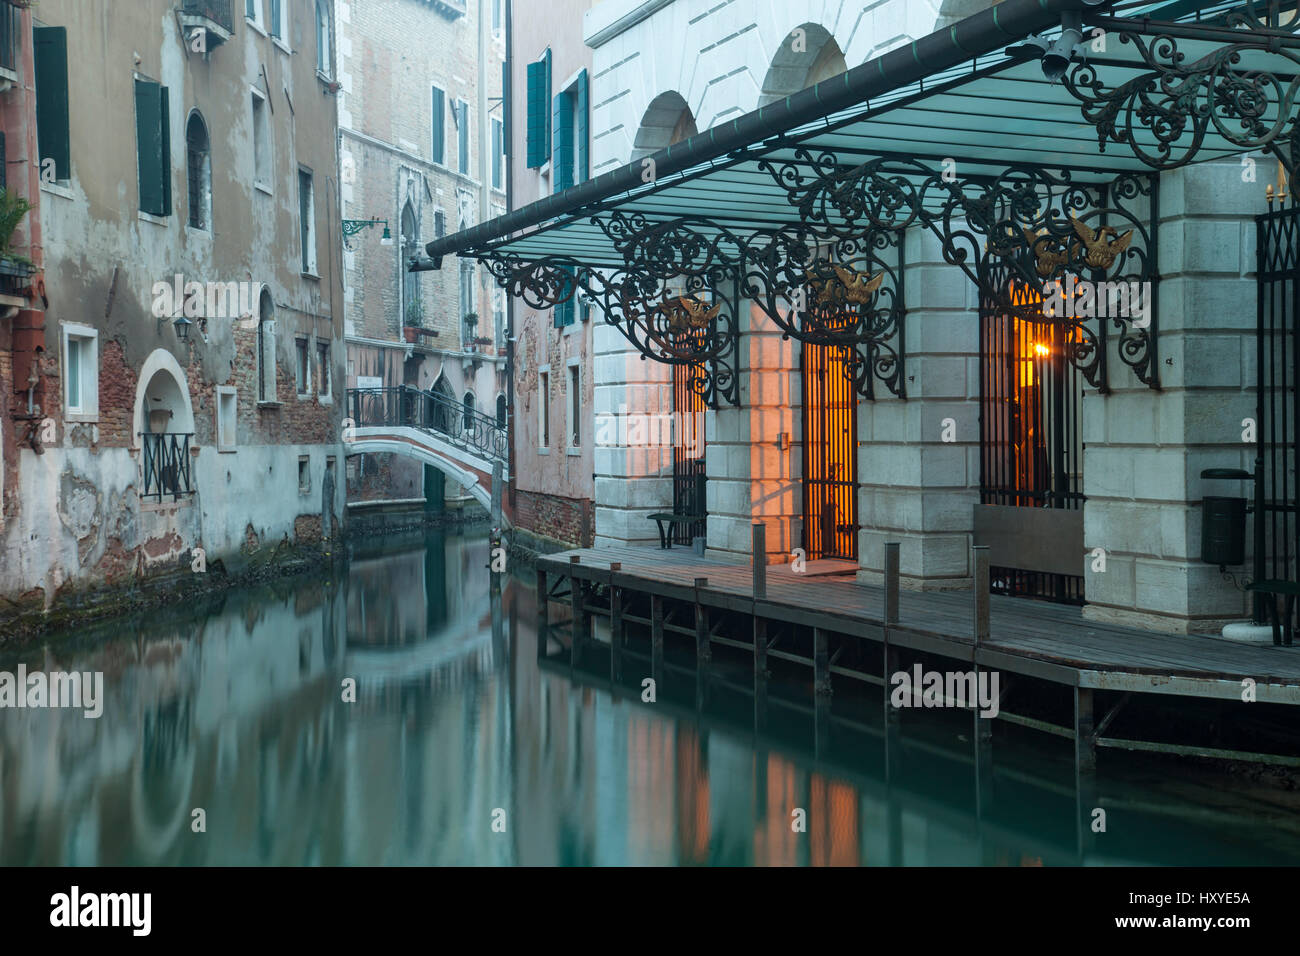 Nebeliger Morgen auf einen Kanal im Sestiere San Marco, Venedig, Italien. Stockfoto